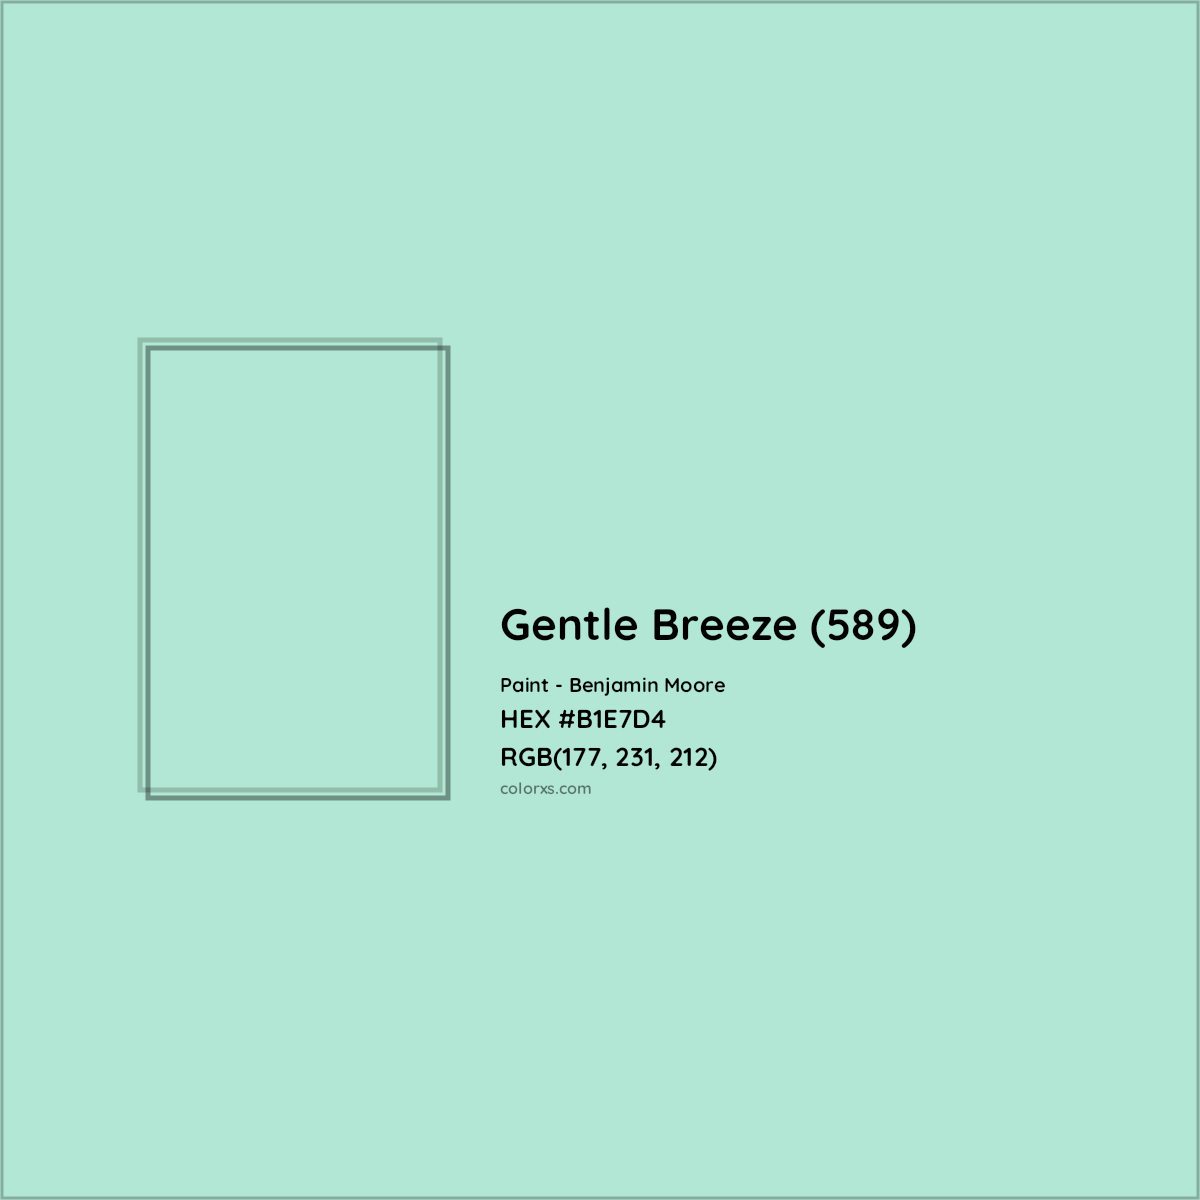 HEX #B1E7D4 Gentle Breeze (589) Paint Benjamin Moore - Color Code